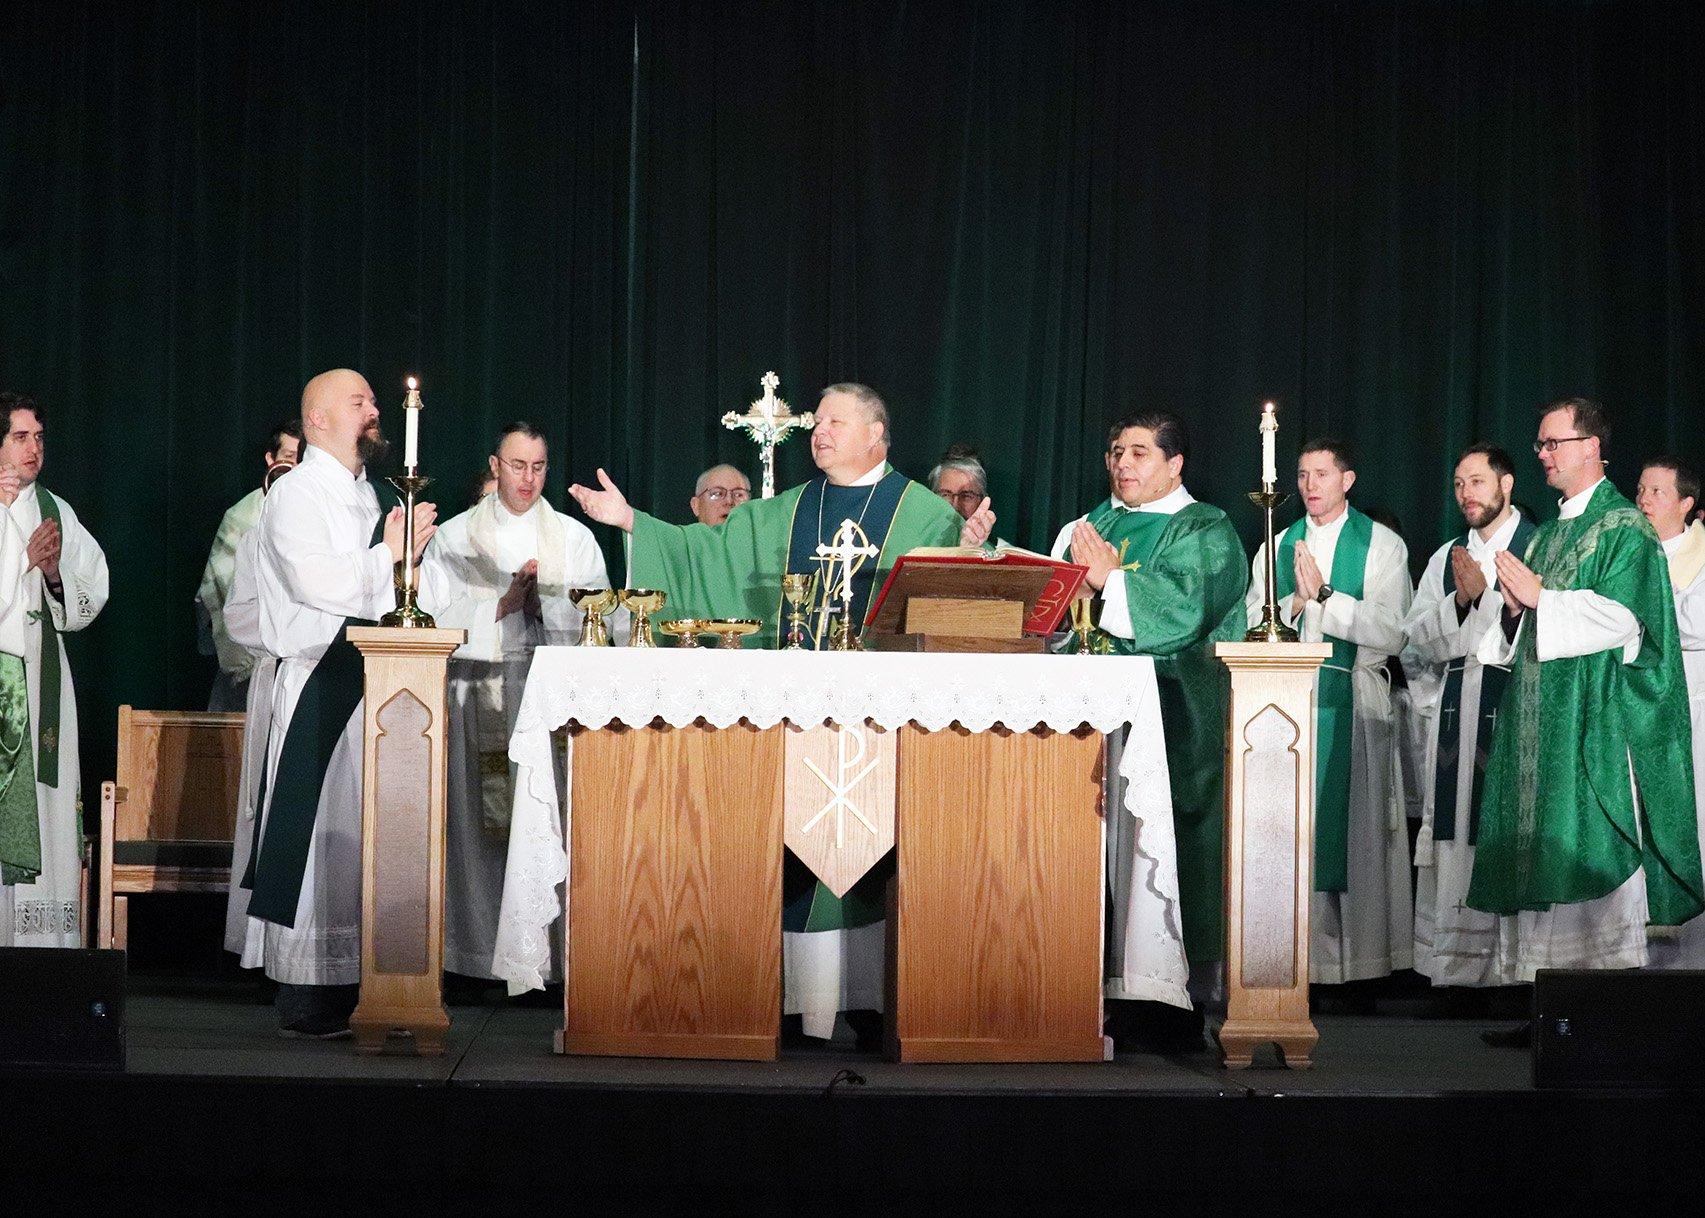 Bishop urges SEEK22 attendees to always remember Jesus’ invitation